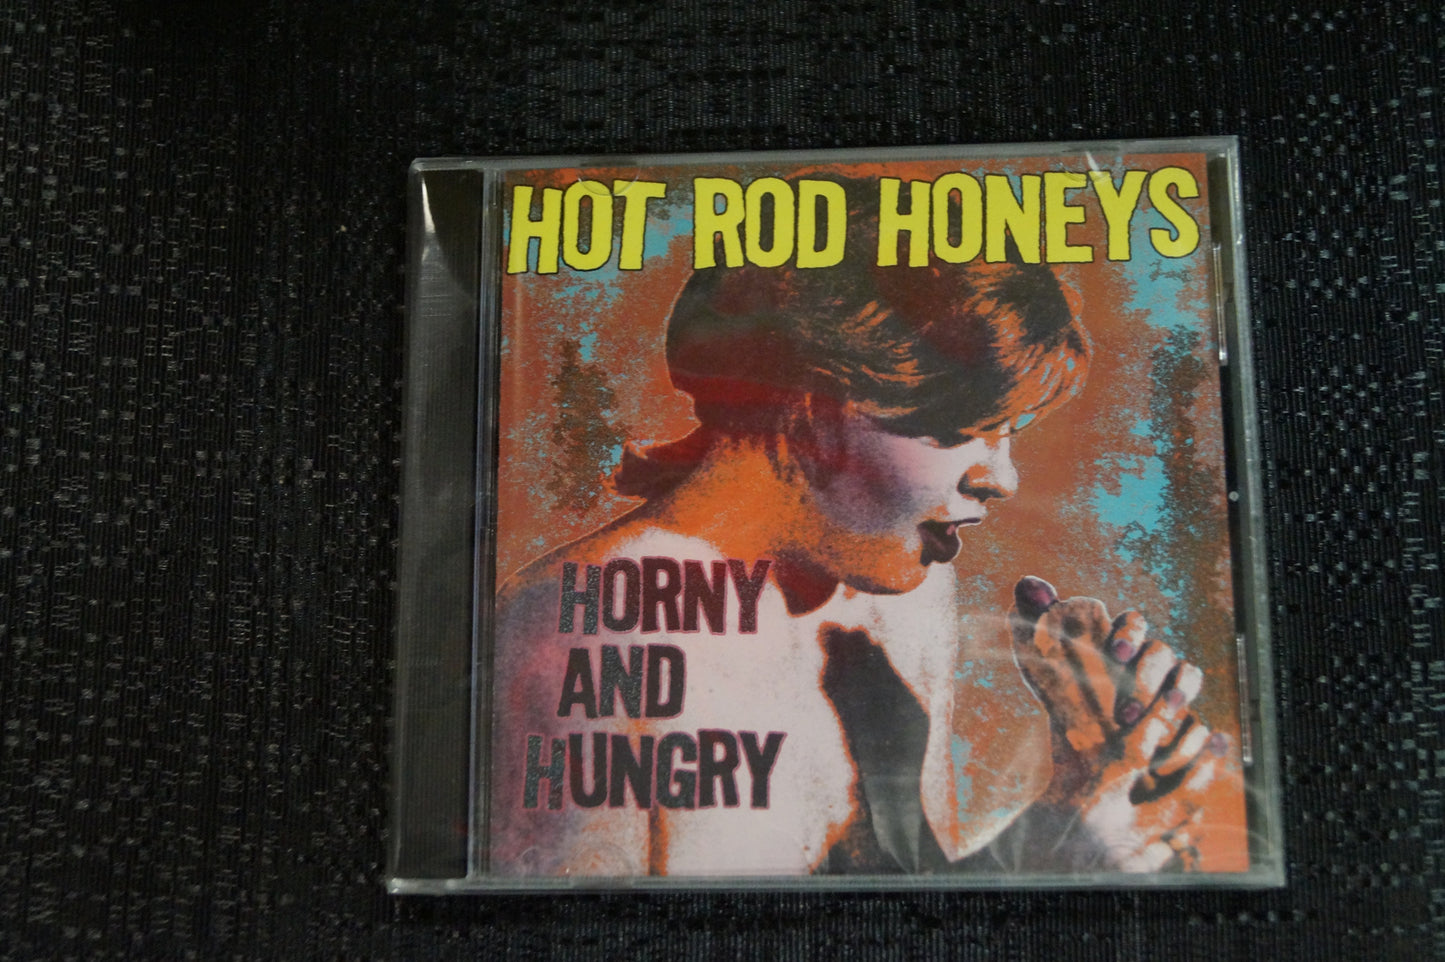 Hod Rod Honeys "Horny and Hungry" 1999 CD Art By Kozik